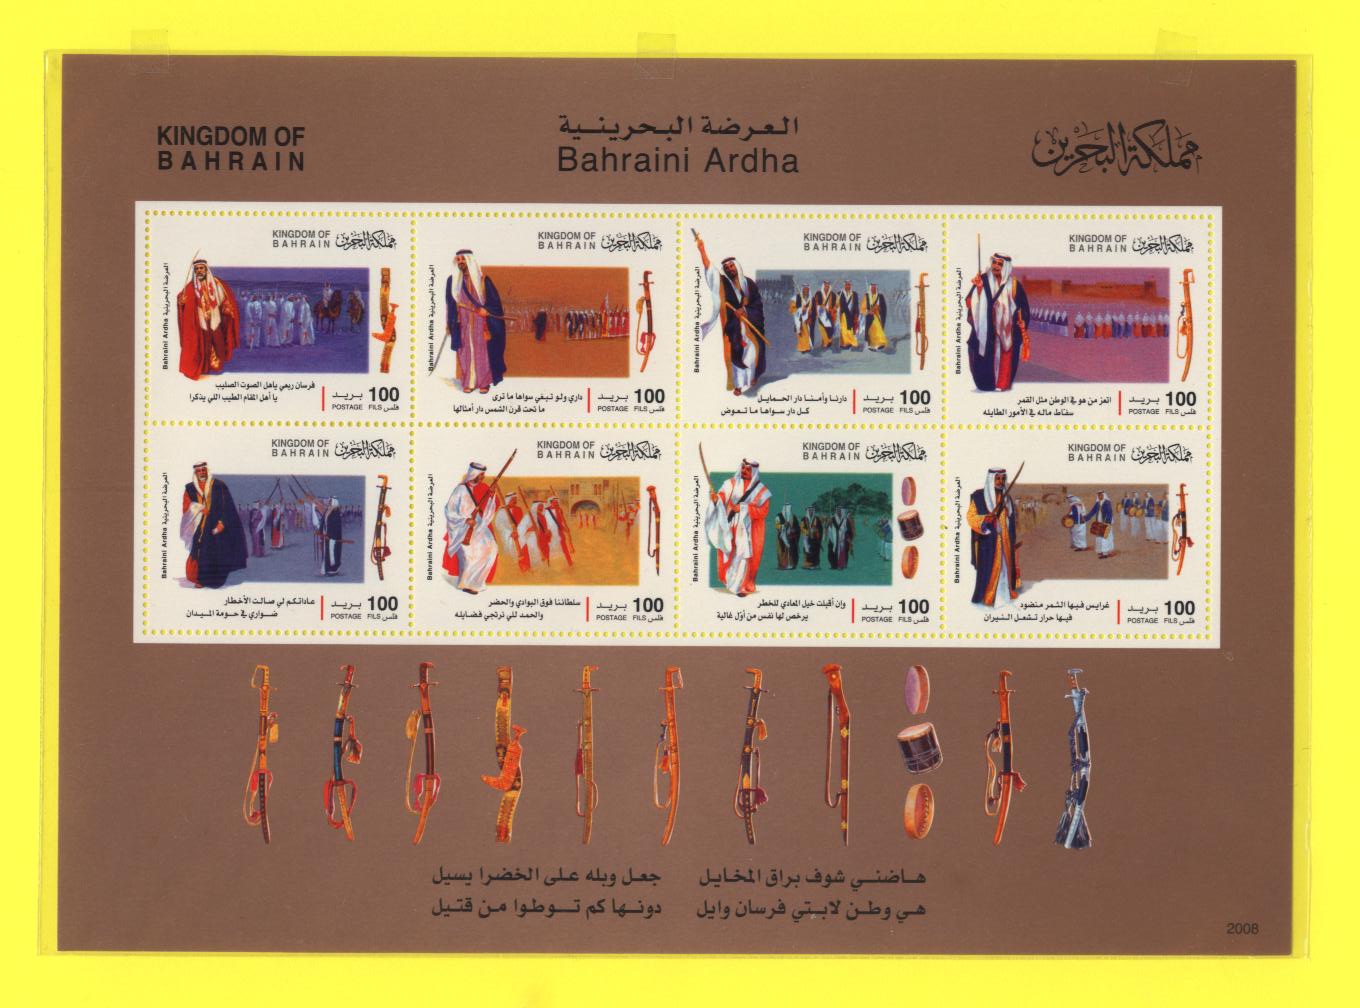 bahrain stamp